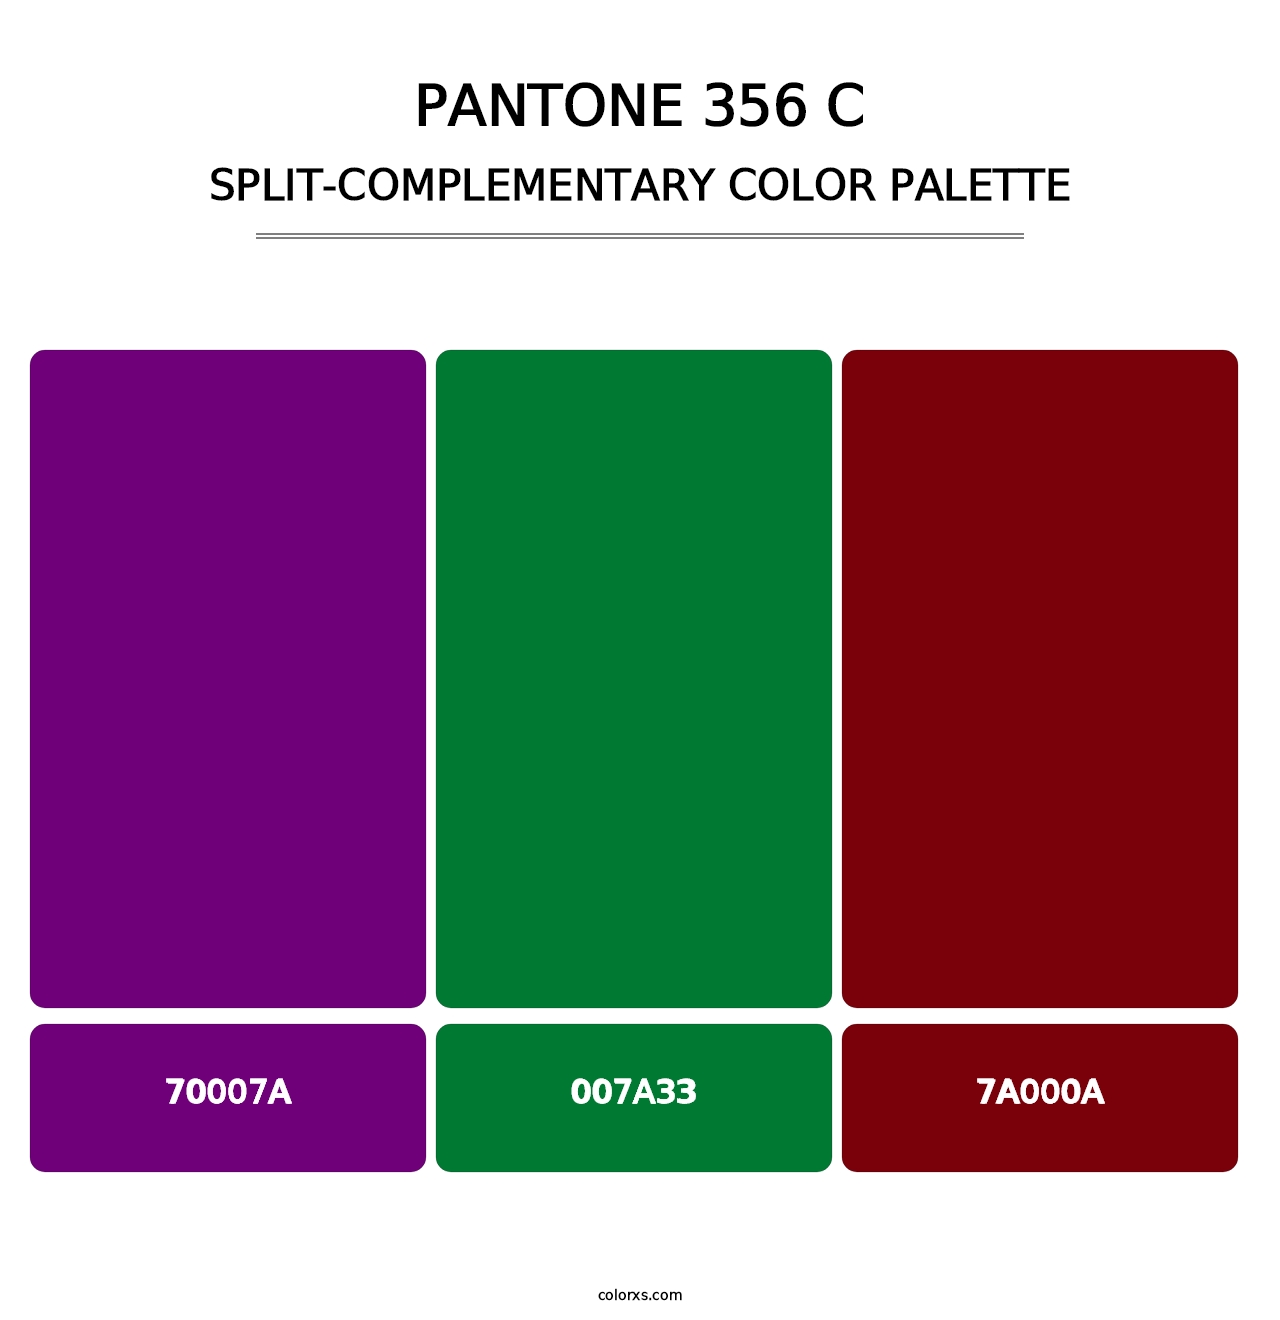 PANTONE 356 C - Split-Complementary Color Palette